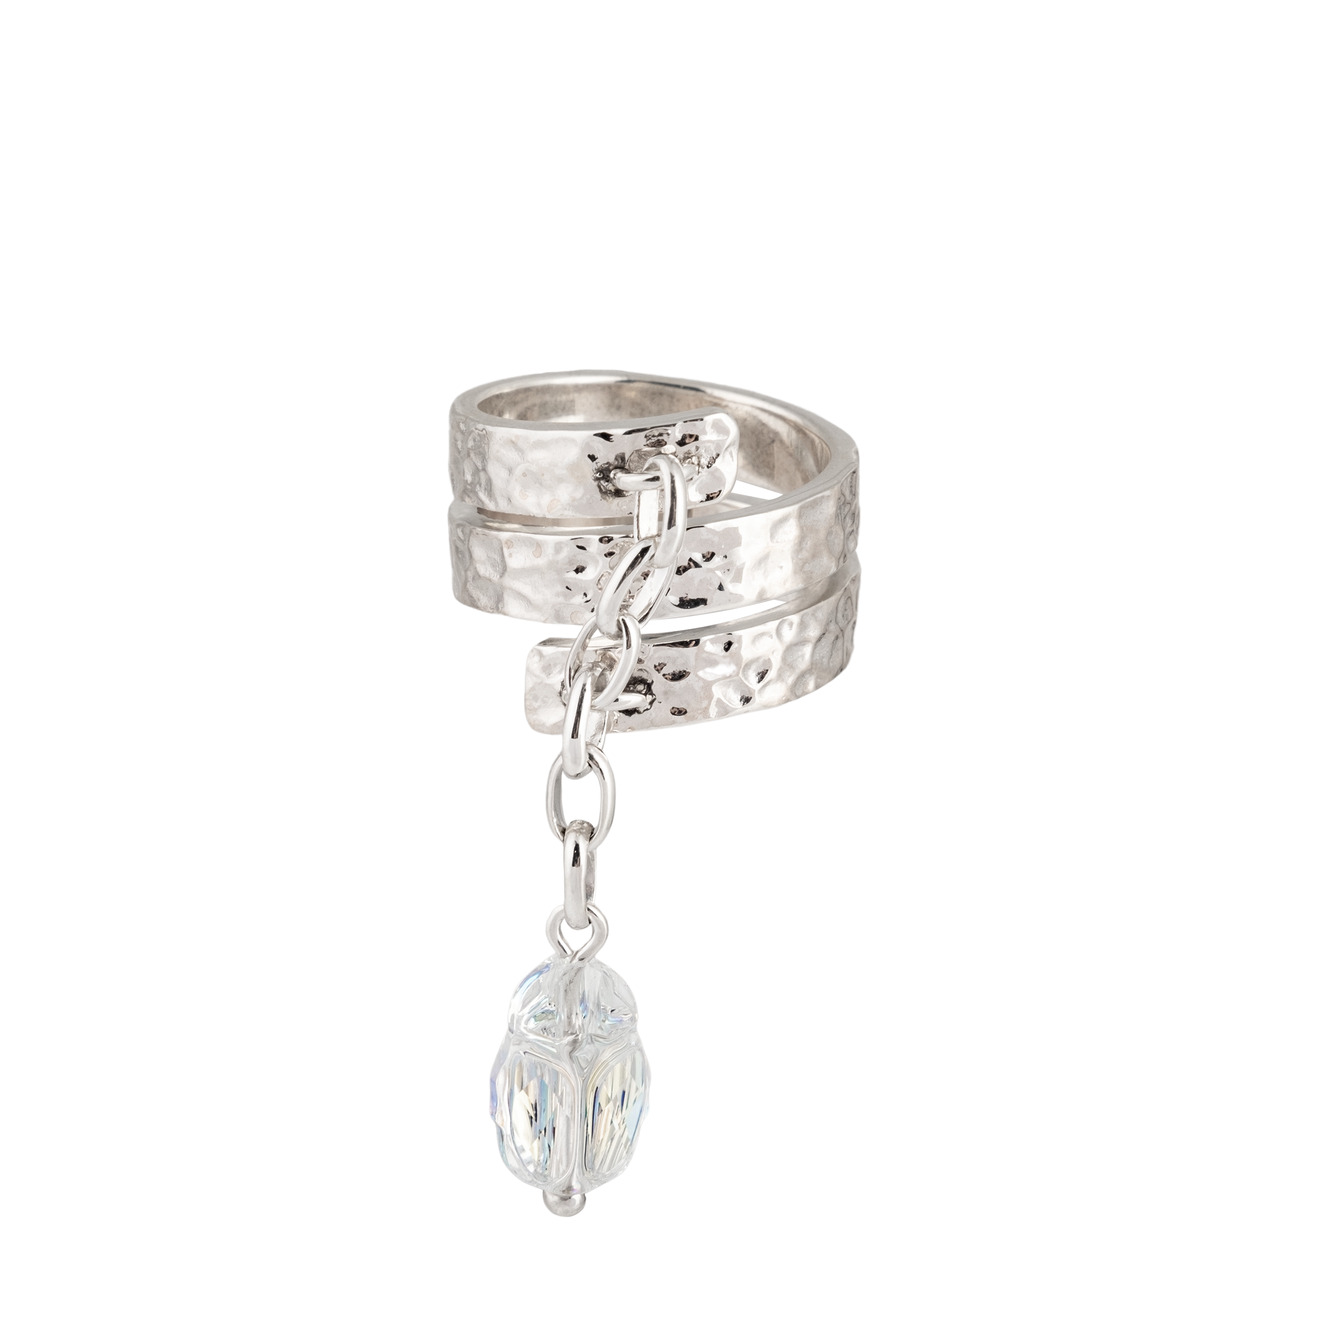 AMARIN Jewelry Светлое кольцо Bugs из серебра amarin jewelry кольцо folk булава 1 из серебра